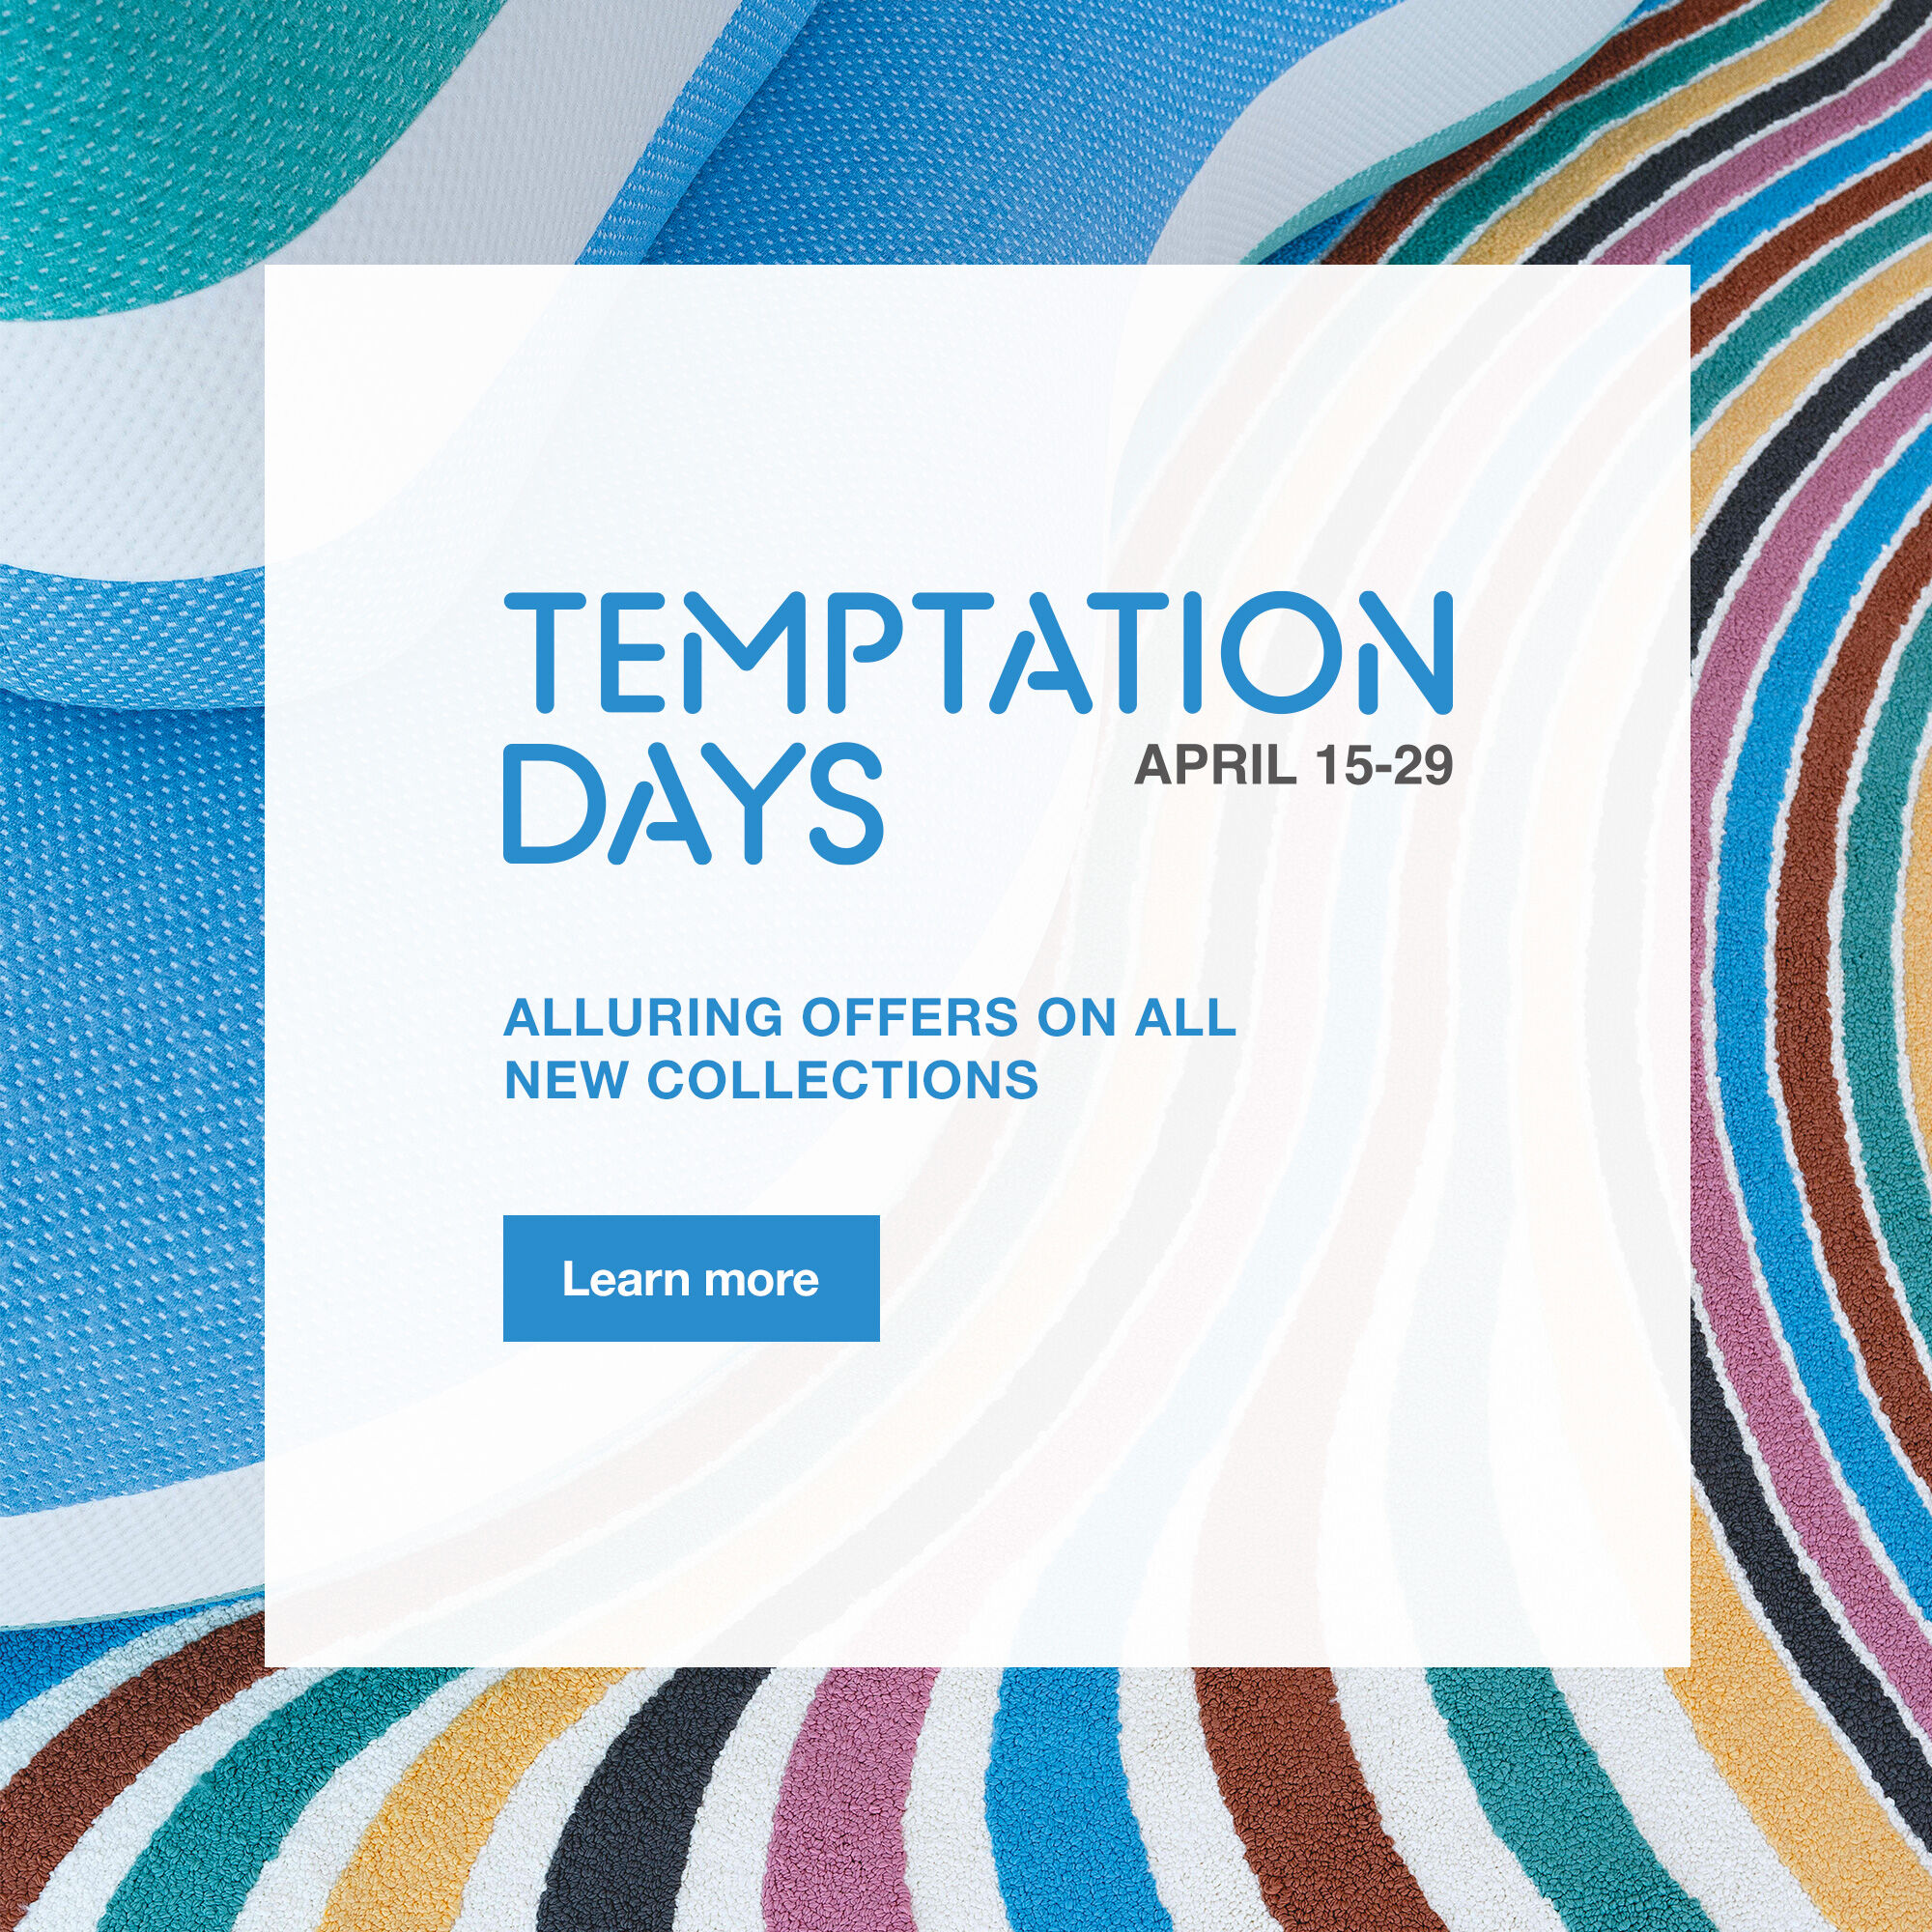 The Temptation Days, until April 29th